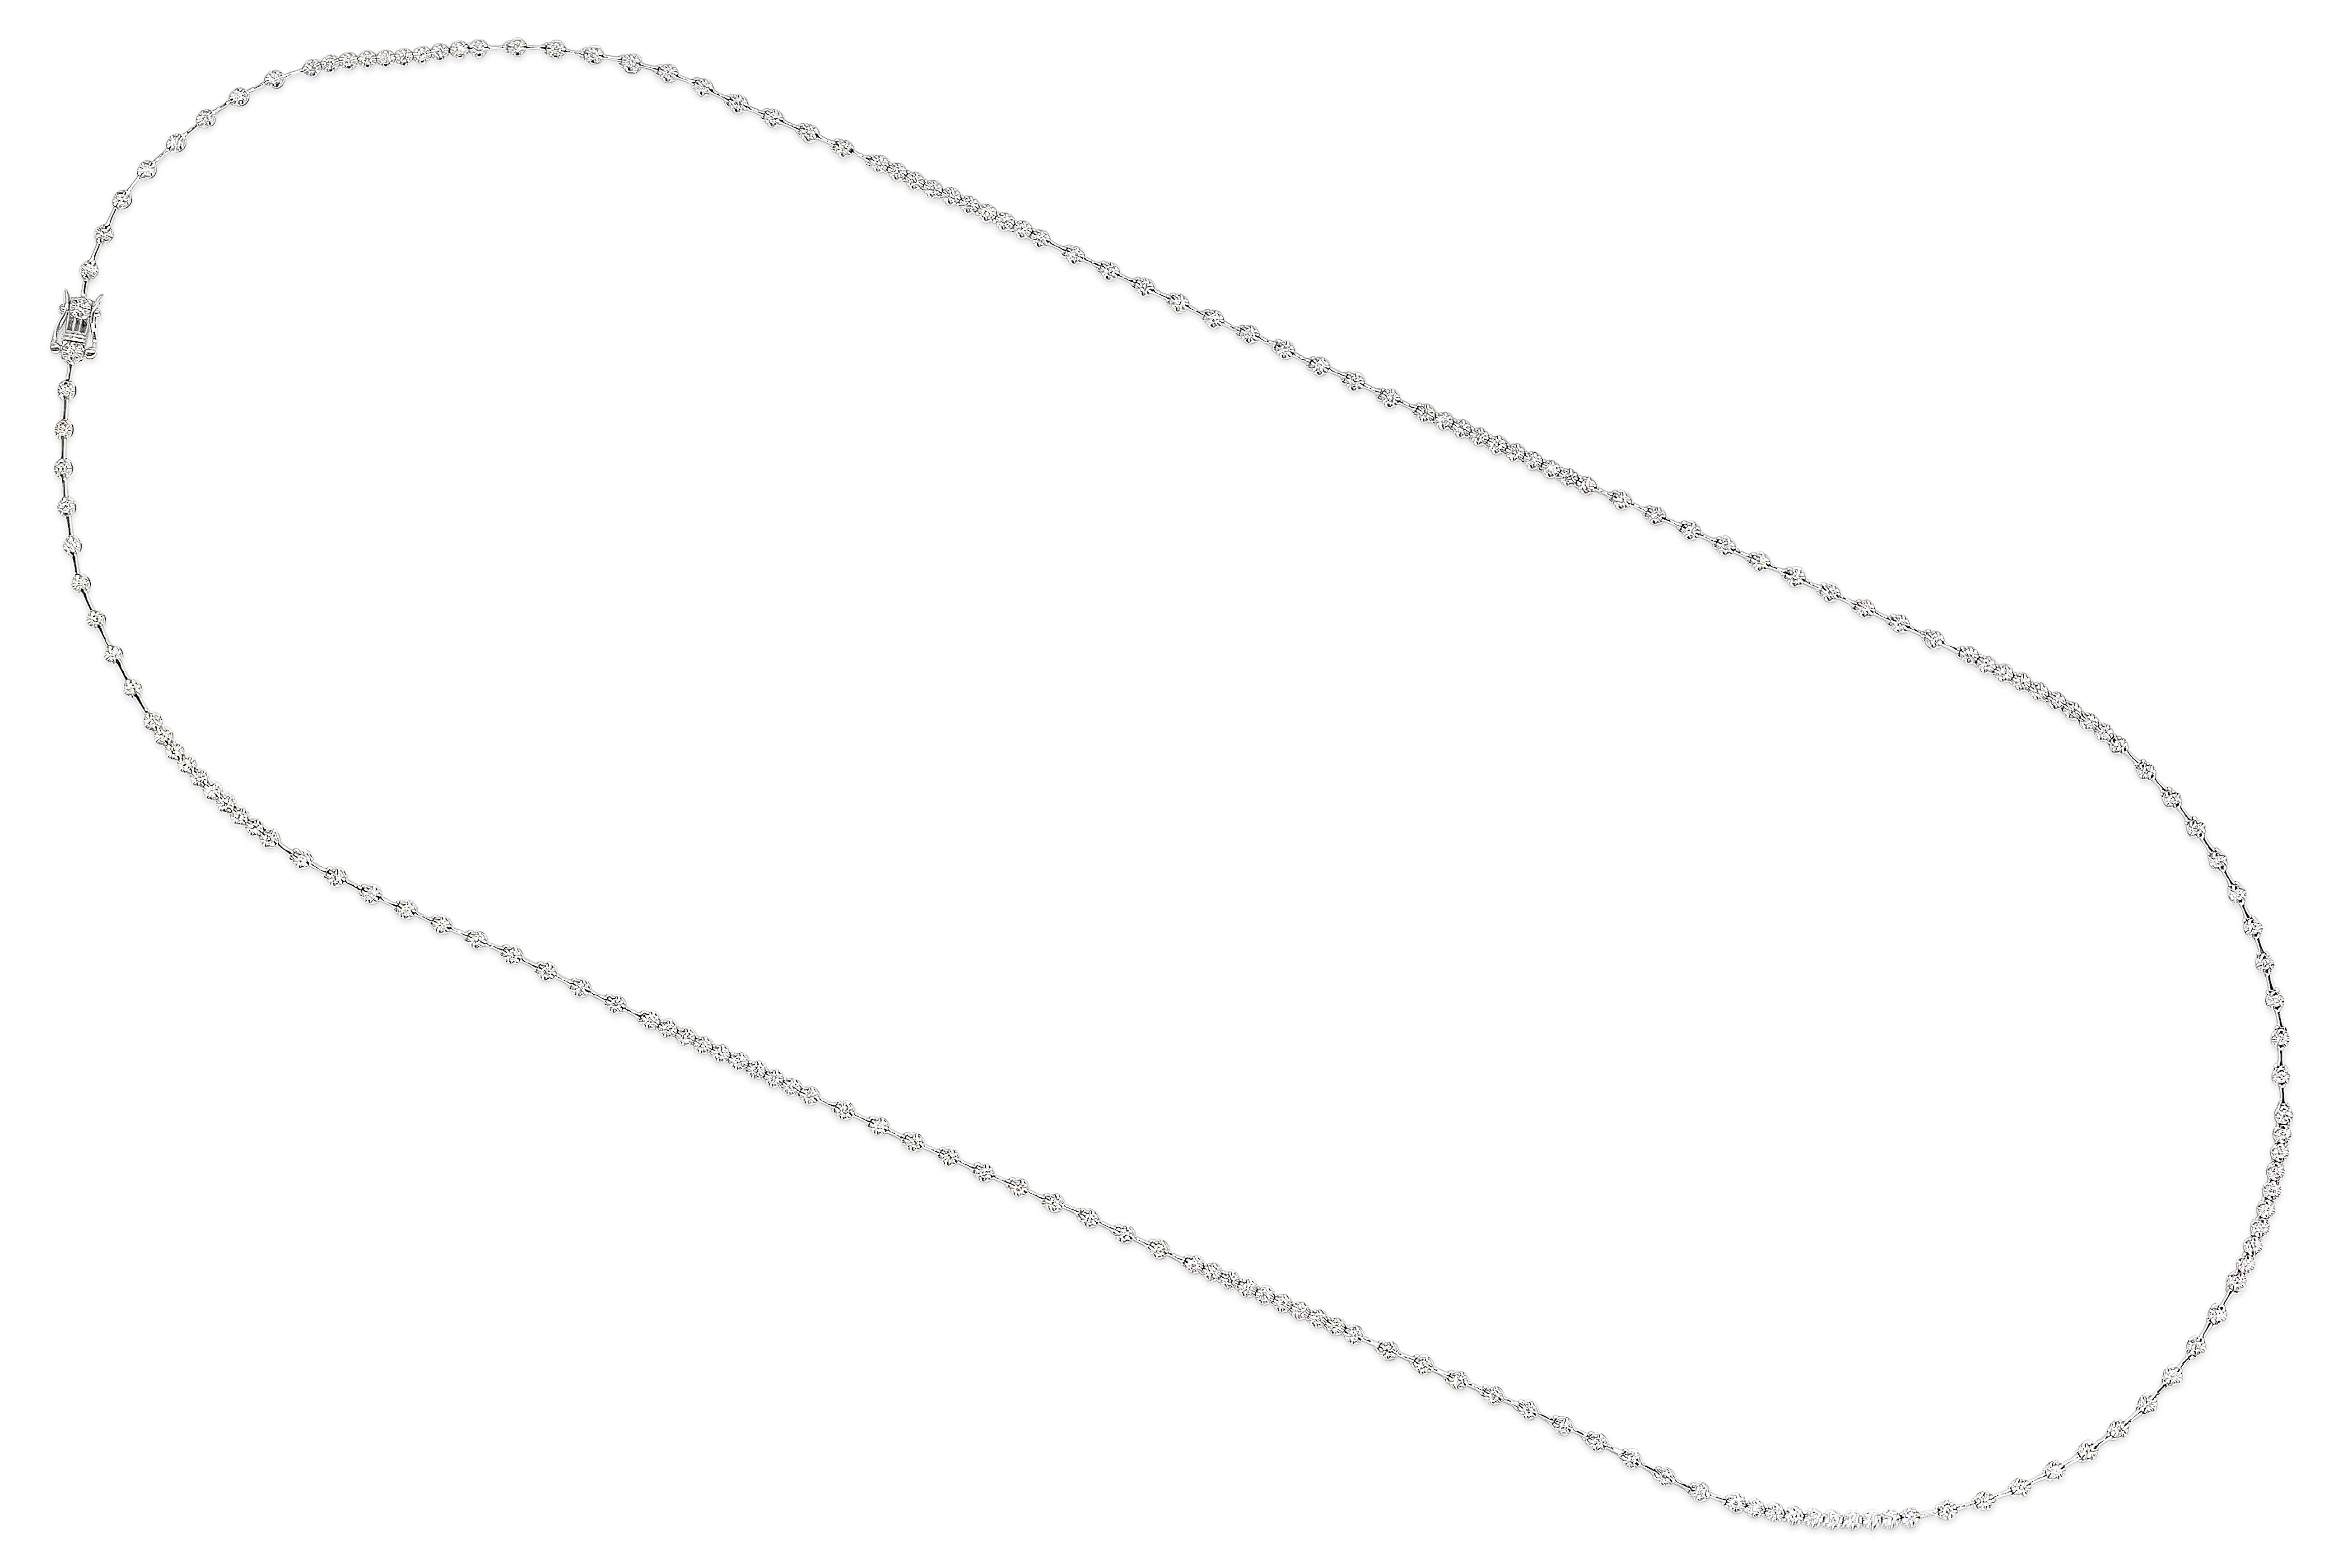 Ein gut verarbeitetes, langes Collier mit 189 runden, gleichmäßig verteilten Brillanten in einer polierten Fassung aus 18 Karat Weißgold. Diamanten wiegen 2,58 Karat insgesamt, F Farbe und SI in Klarheit. 31,75 Zoll in der Länge.

Roman Malakov ist